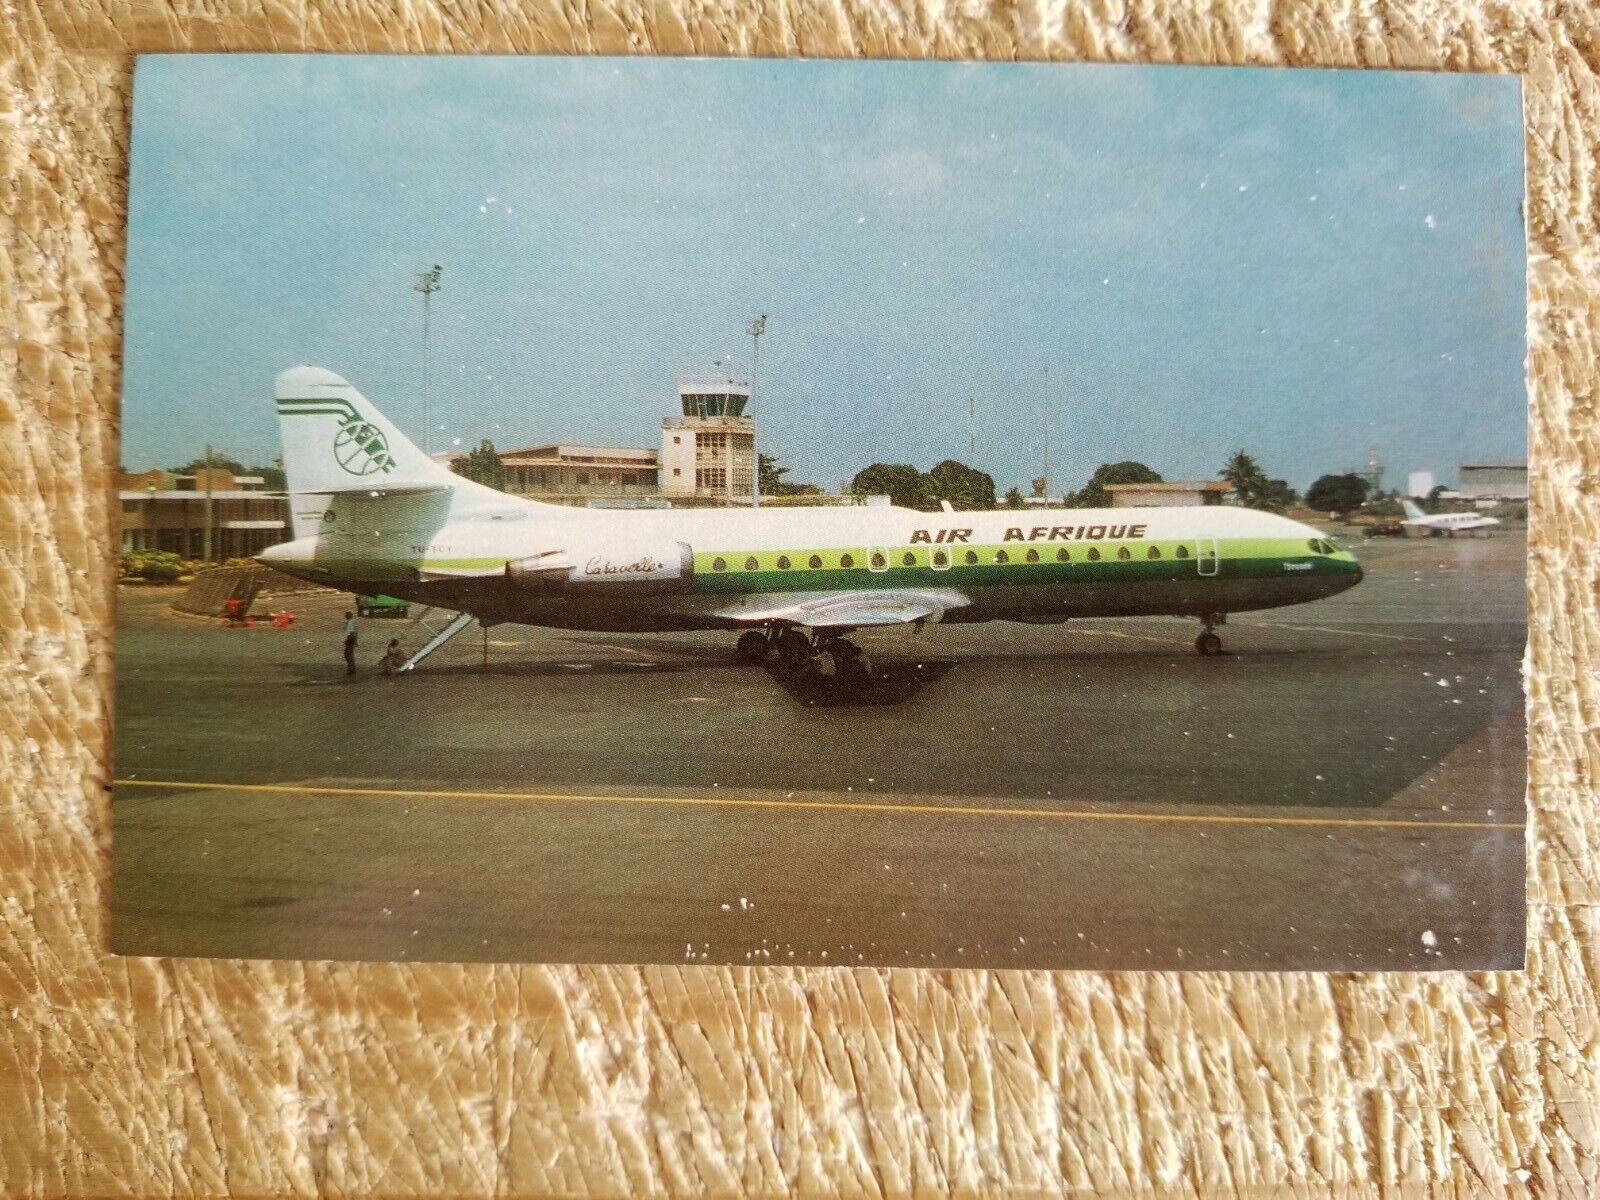 AIR AFRIQUE AEROSPATIALE SE-CARVELLE 11R IN 1980.VTG AIRCRAFT POSTCARD*P47